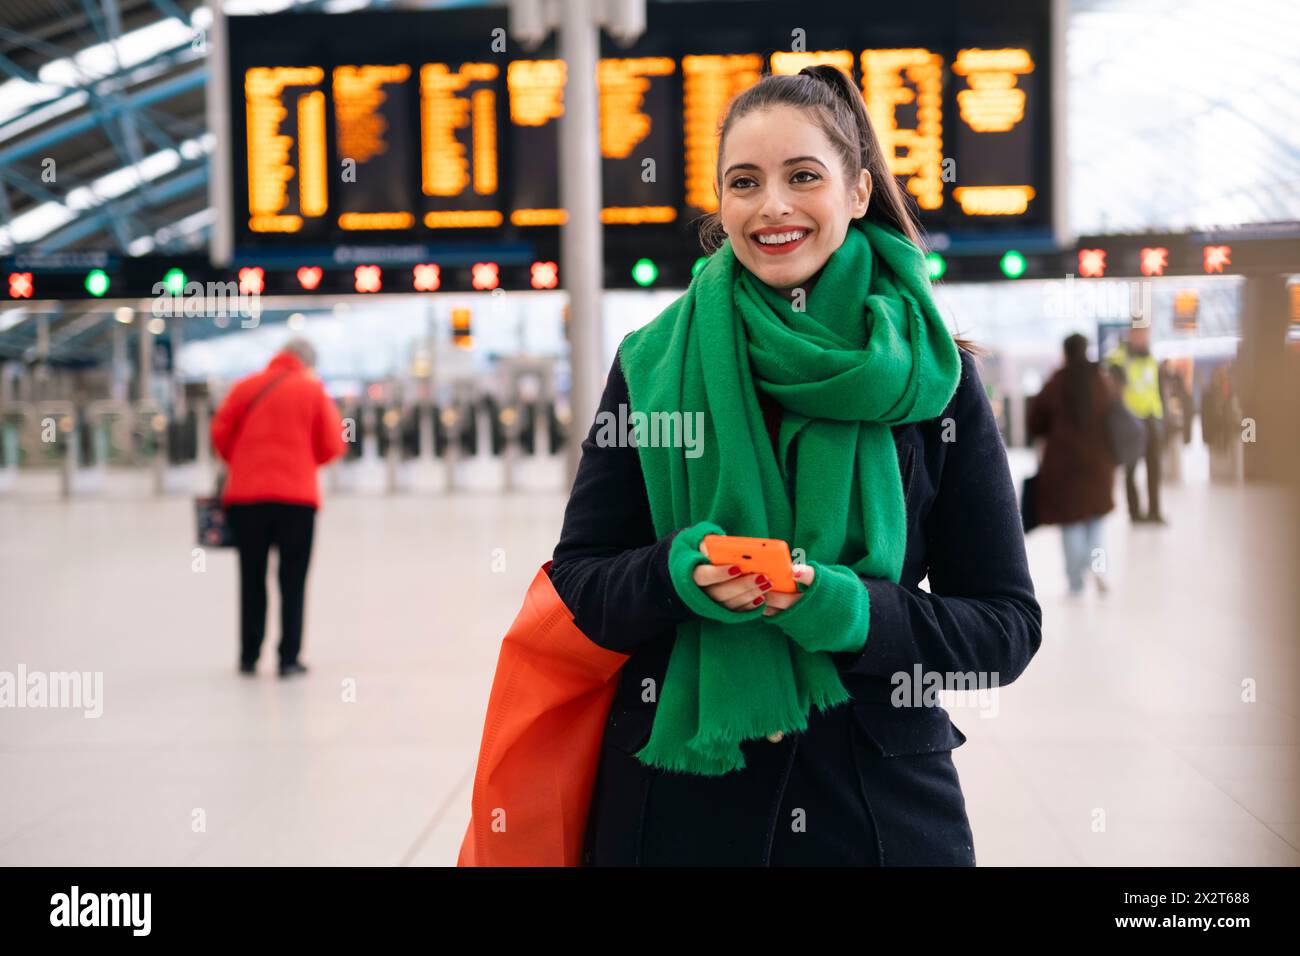 Glückliche Frau, die einen grünen Schal trägt und am Bahnhof ihr Smartphone hält Stockfoto